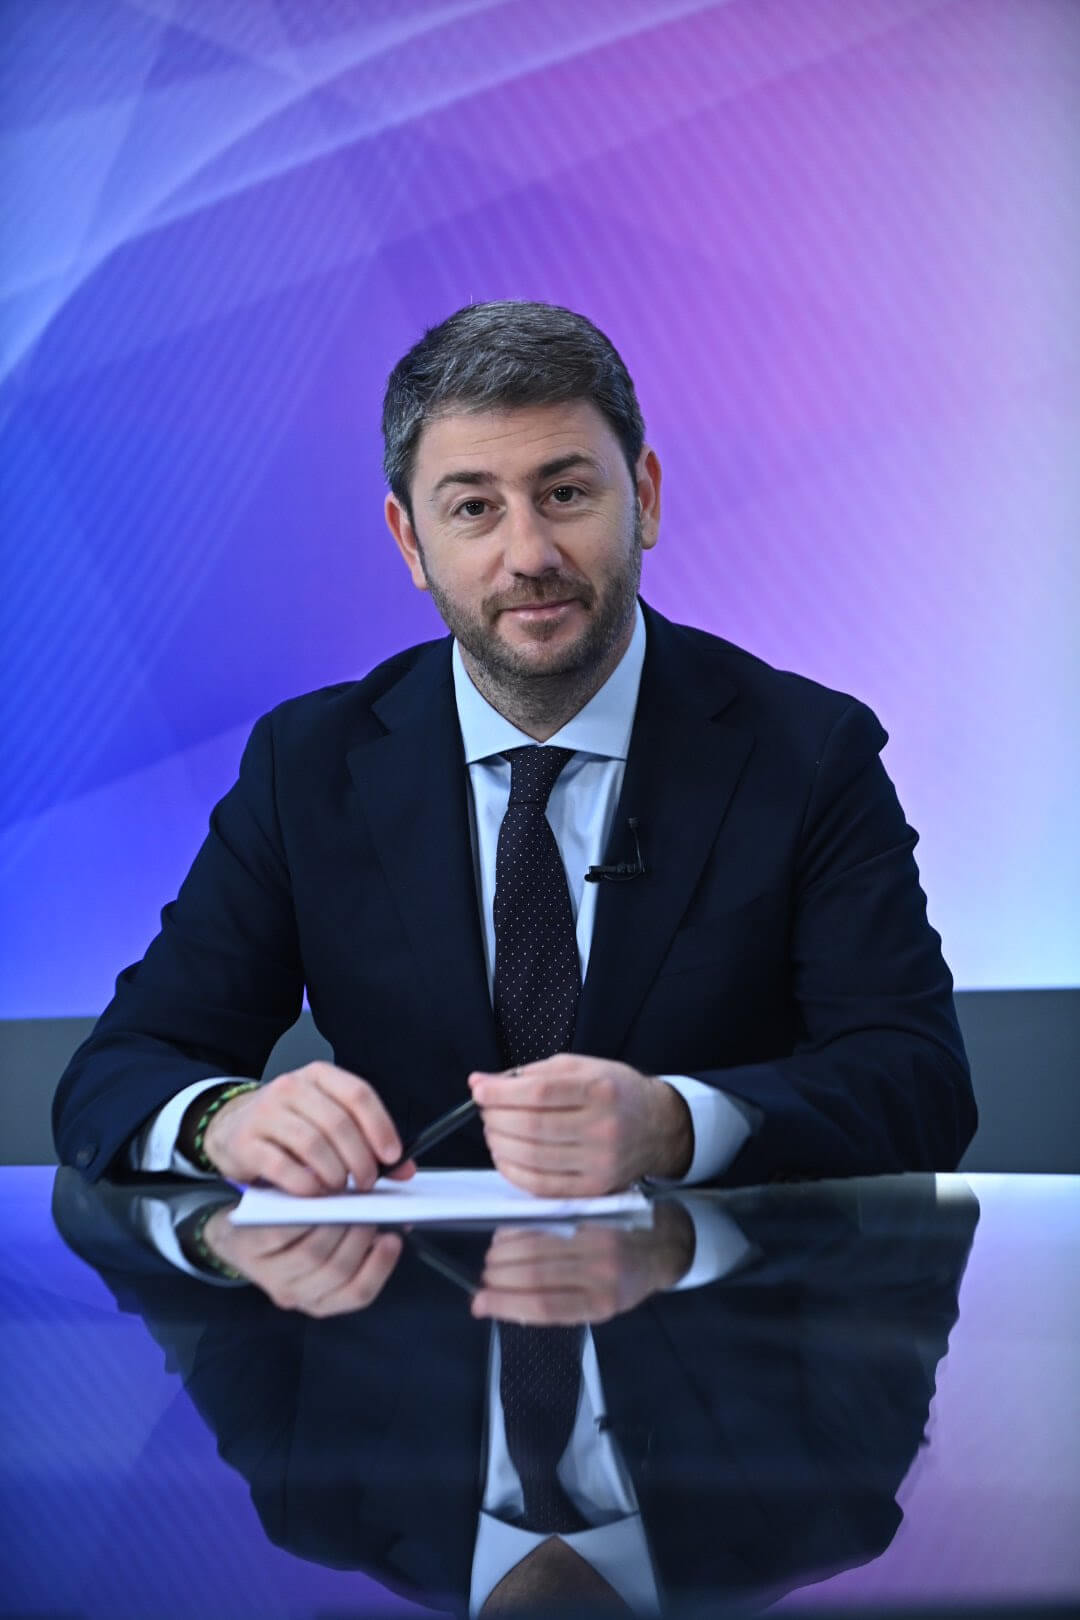 Νίκος Ανδρουλάκης : Αντι για δίπλα στον πολίτη , η κυβέρνηση είναι πρώτα δίπλα στα συμφέροντα